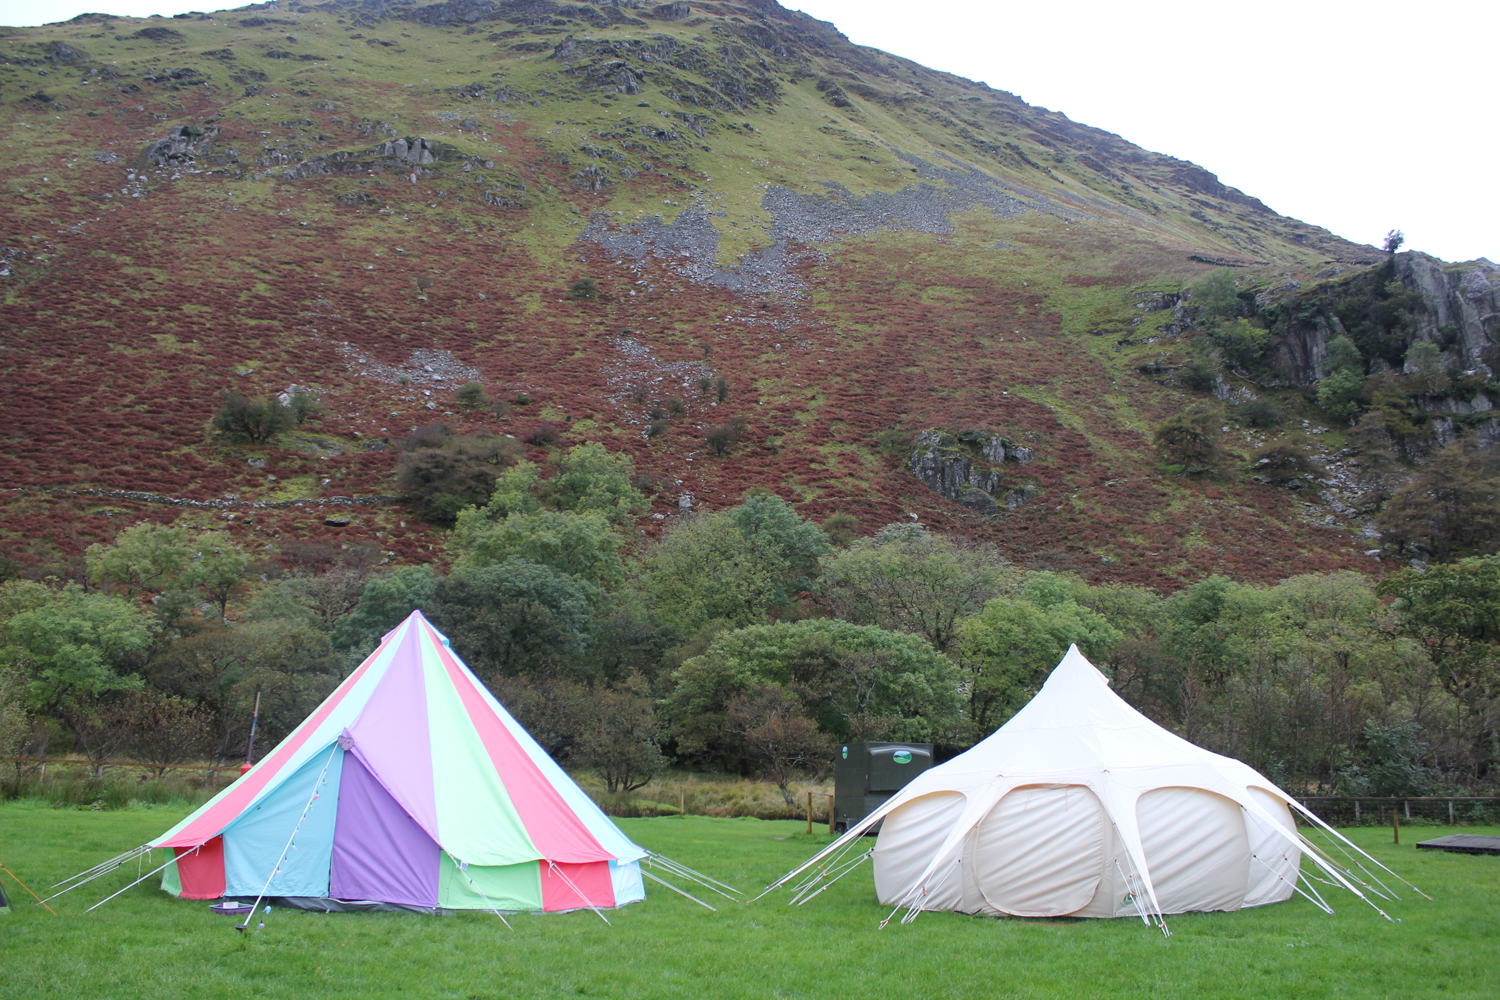 tents set up at campsite